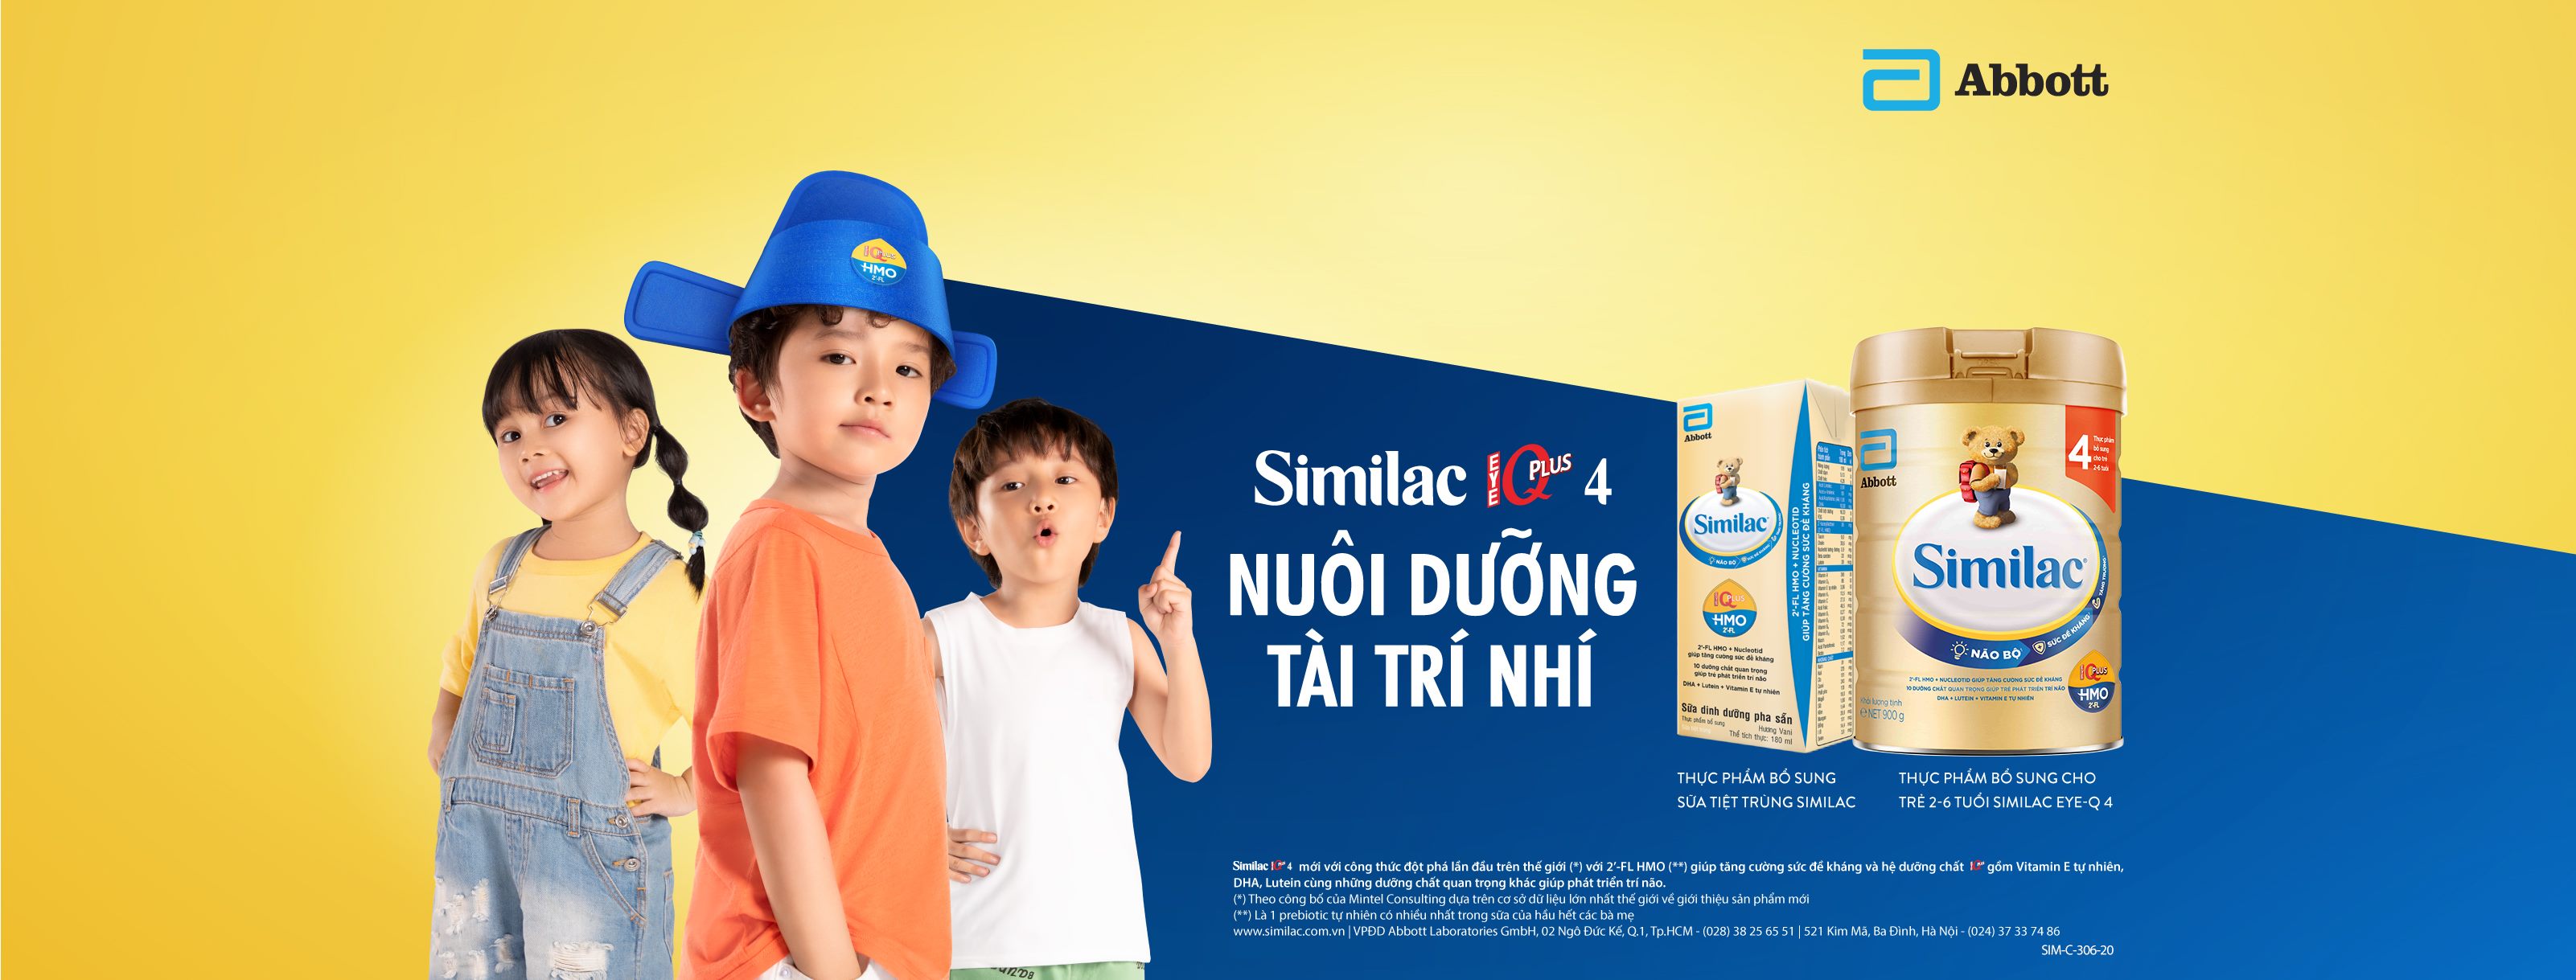 [Review] Đánh giá sữa công thức Similac có tốt cho hệ tiêu hóa trẻ nhỏ không? -